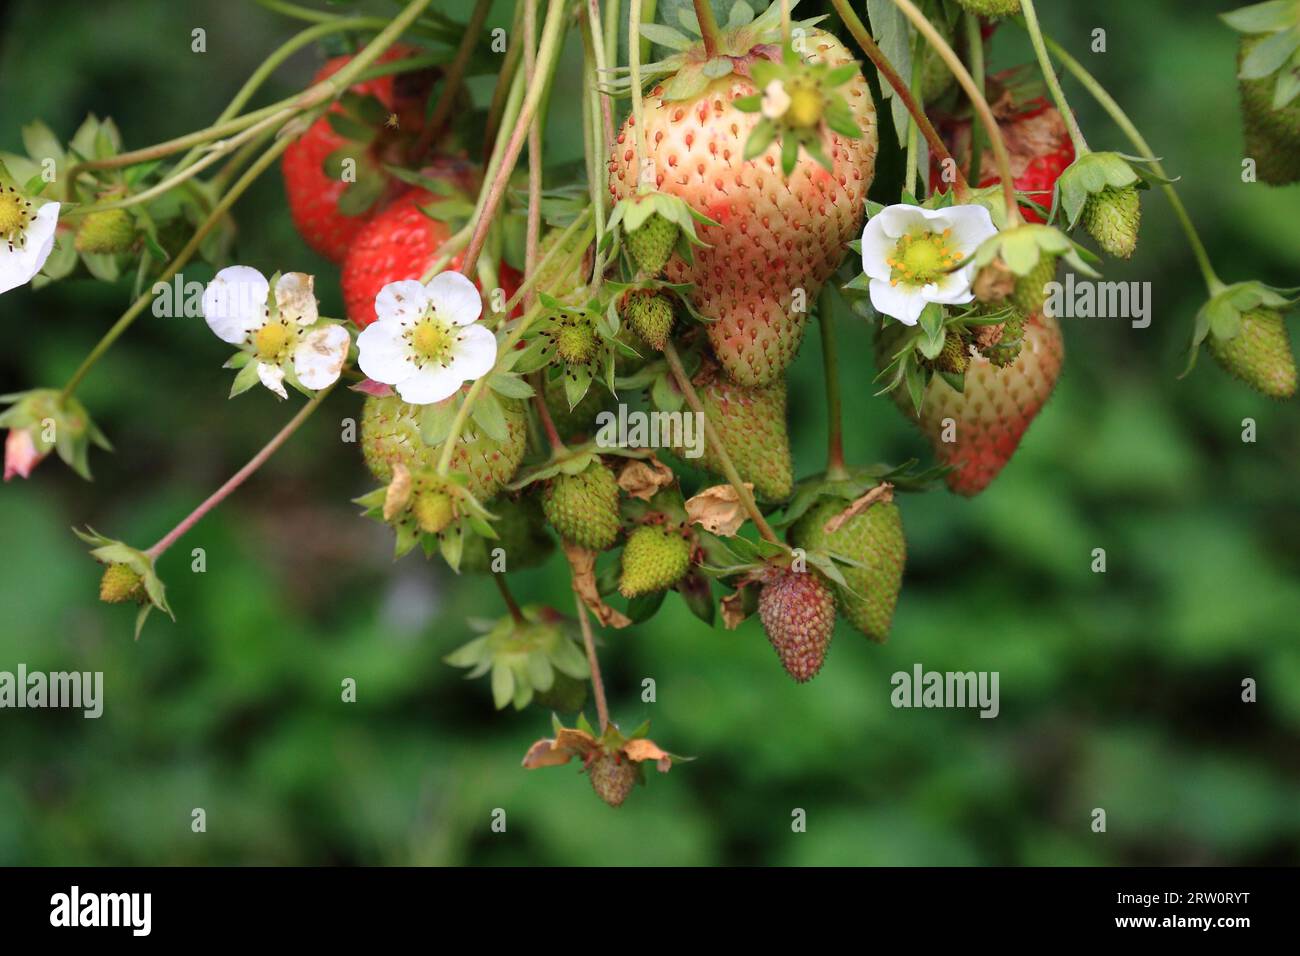 Blühende Erdbeerpflanze mit Früchten, Hintergrundgarten, mit Tiefe des Feldes aufgenommen Stockfoto